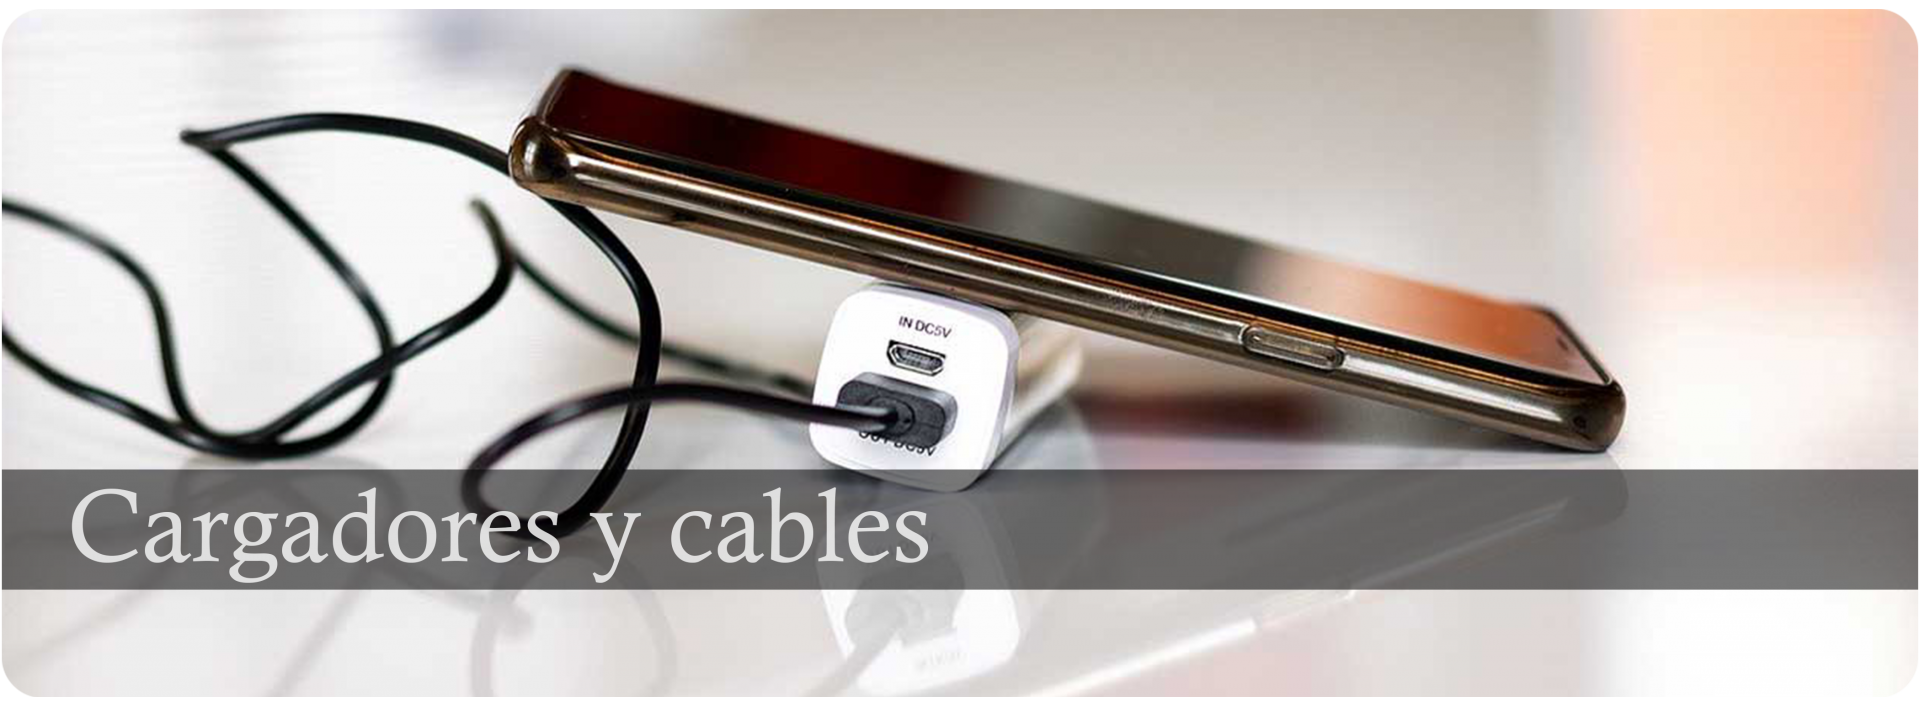 Cargadores, cables, de red y coche, para carga y sincronización de tu dispositivo al mejor precio y calidad